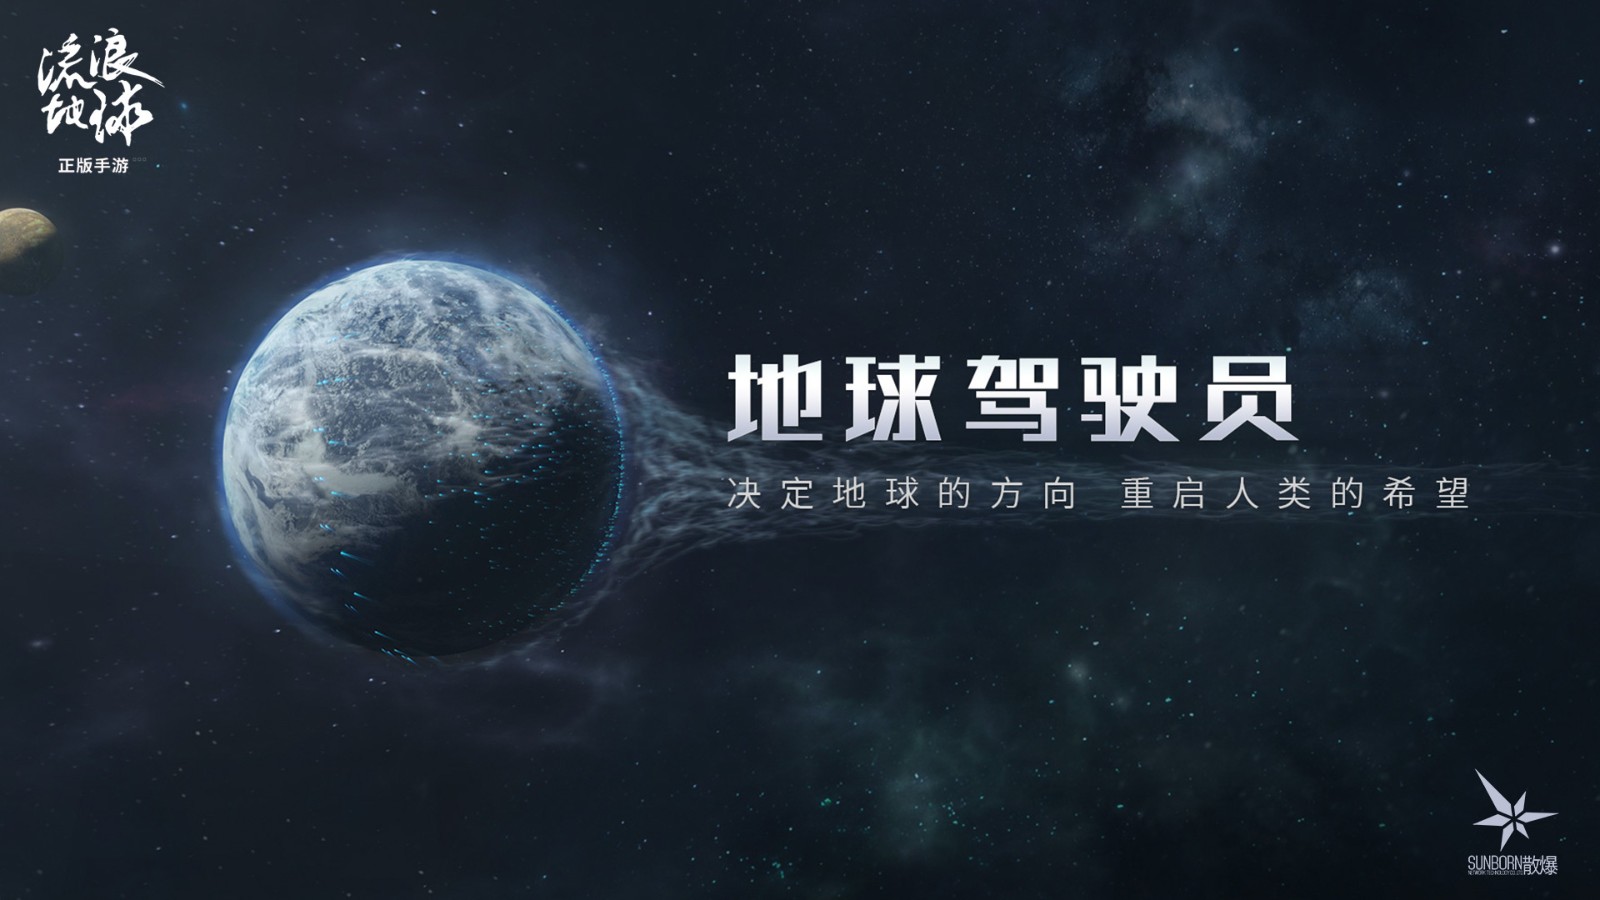 中式硬核科幻战略足游 《流浪天球足游》正式支布 平易近网预定开启